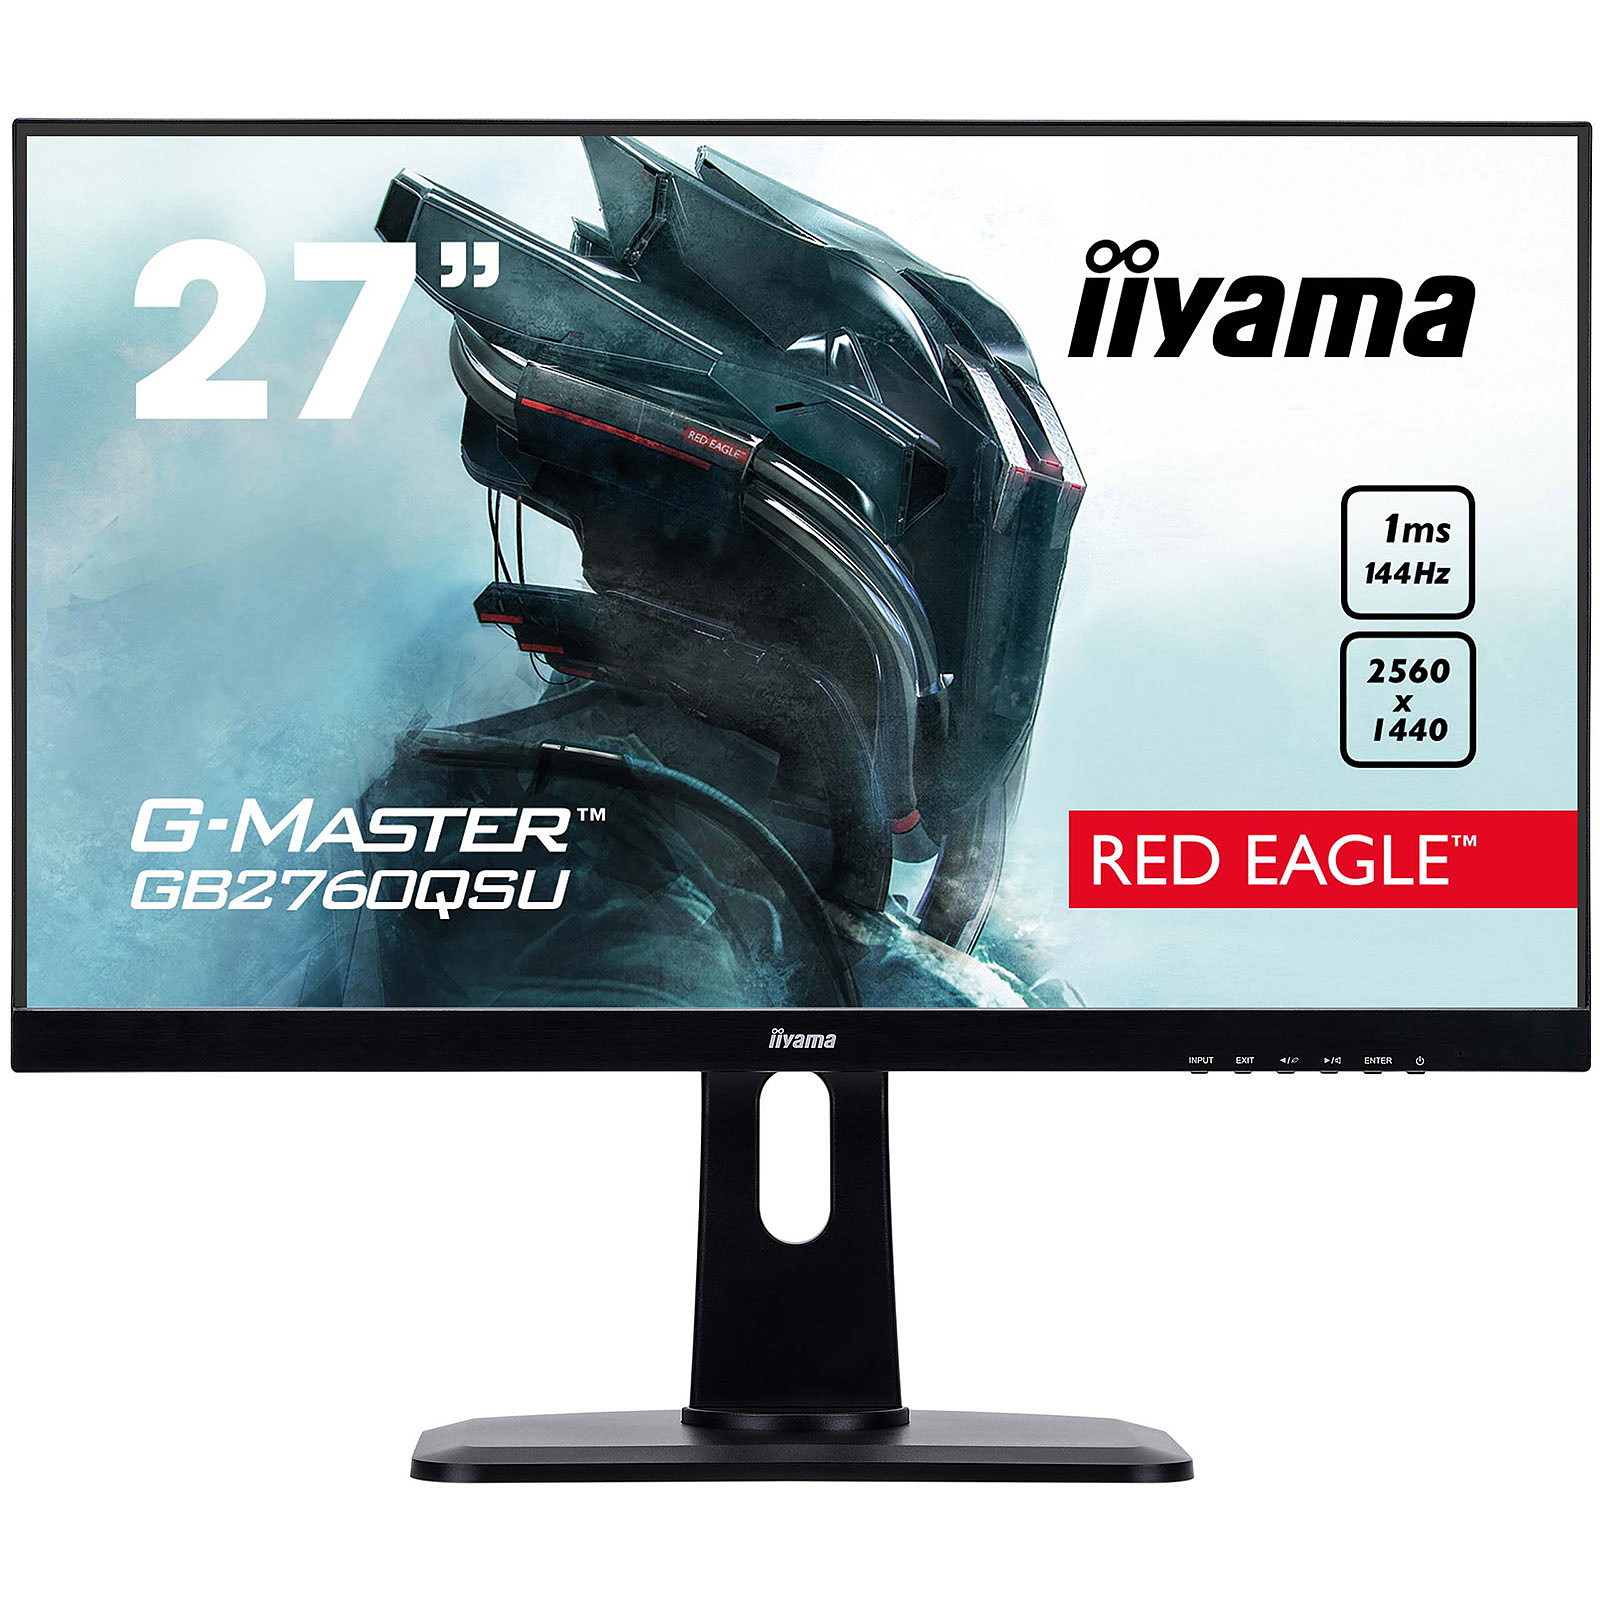 iiyama 27" LED - G-MASTER GB2760QSU-B1 Red Eagle - Ecran PC iiyama